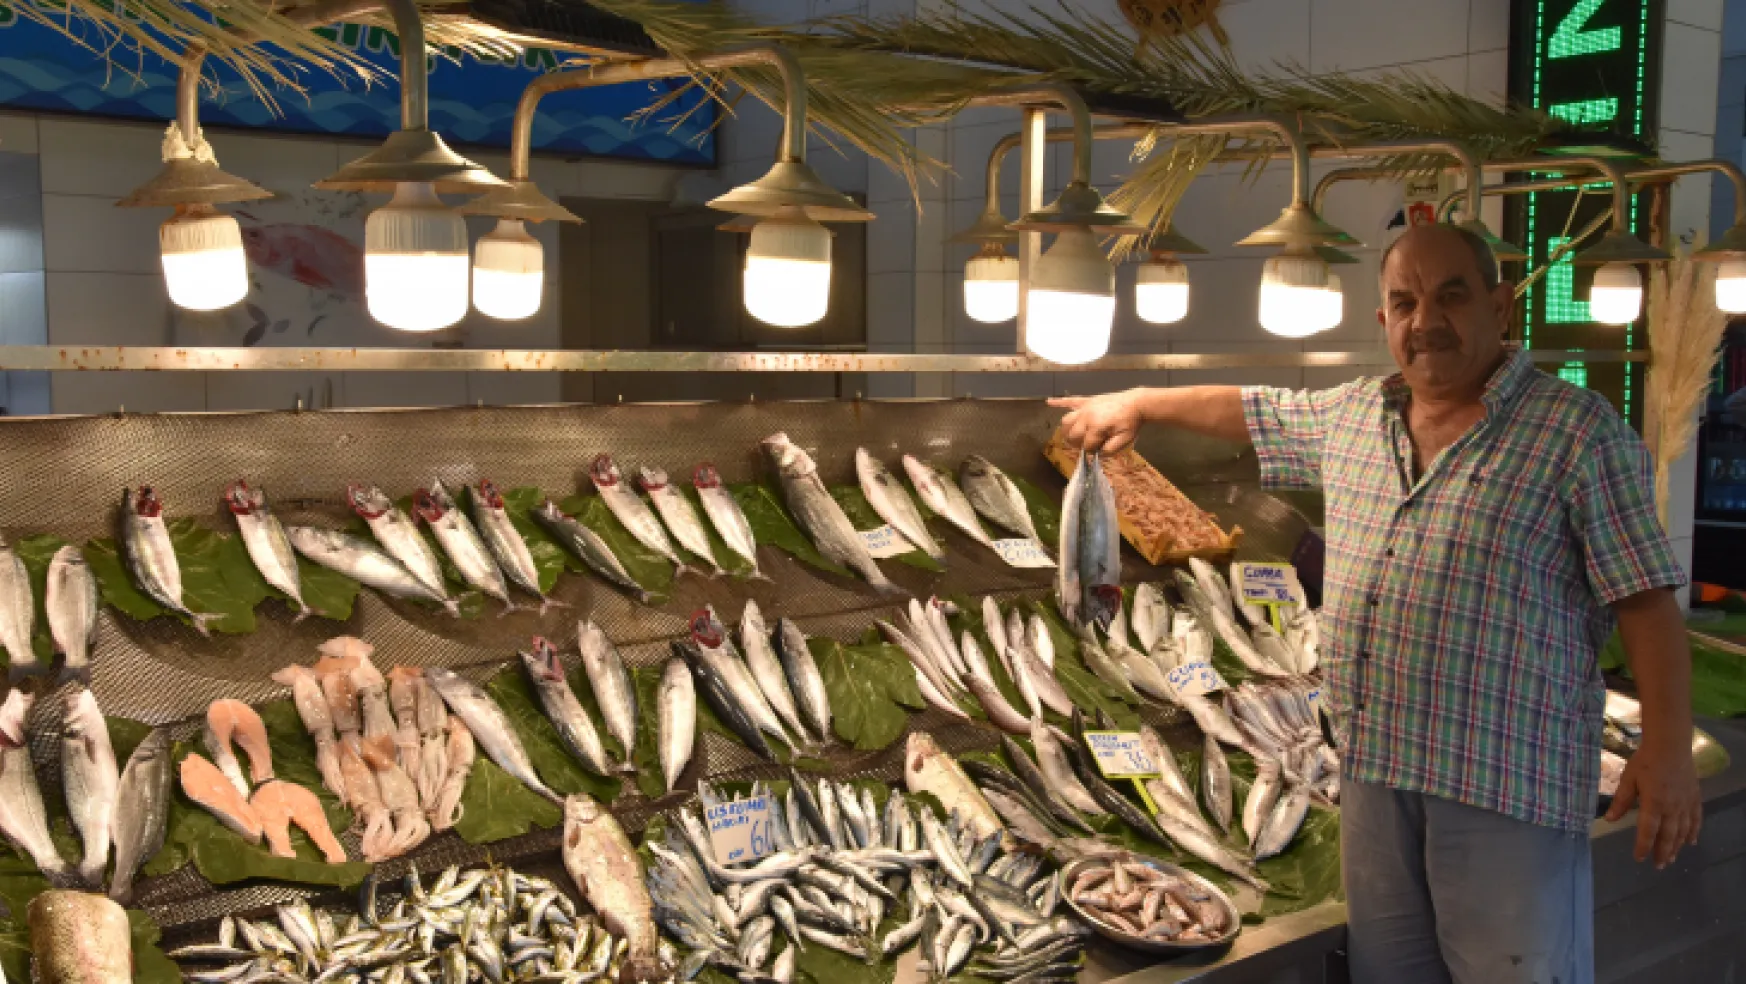 Av yasağının son günü balık fiyatları